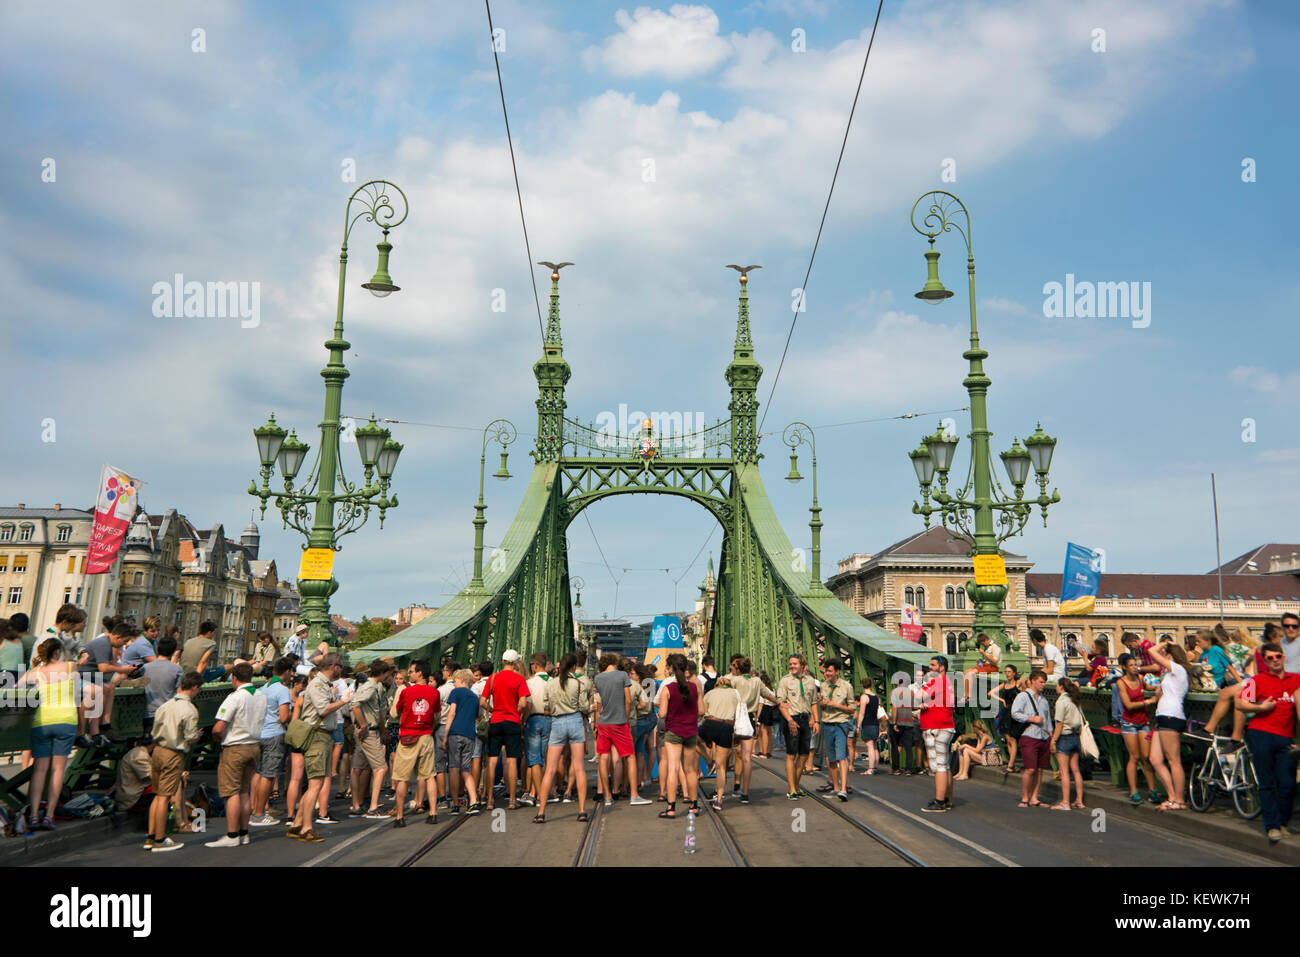 Szabadság híd de vue horizontale ou pont de la liberté fermée à la circulation à Budapest. Banque D'Images